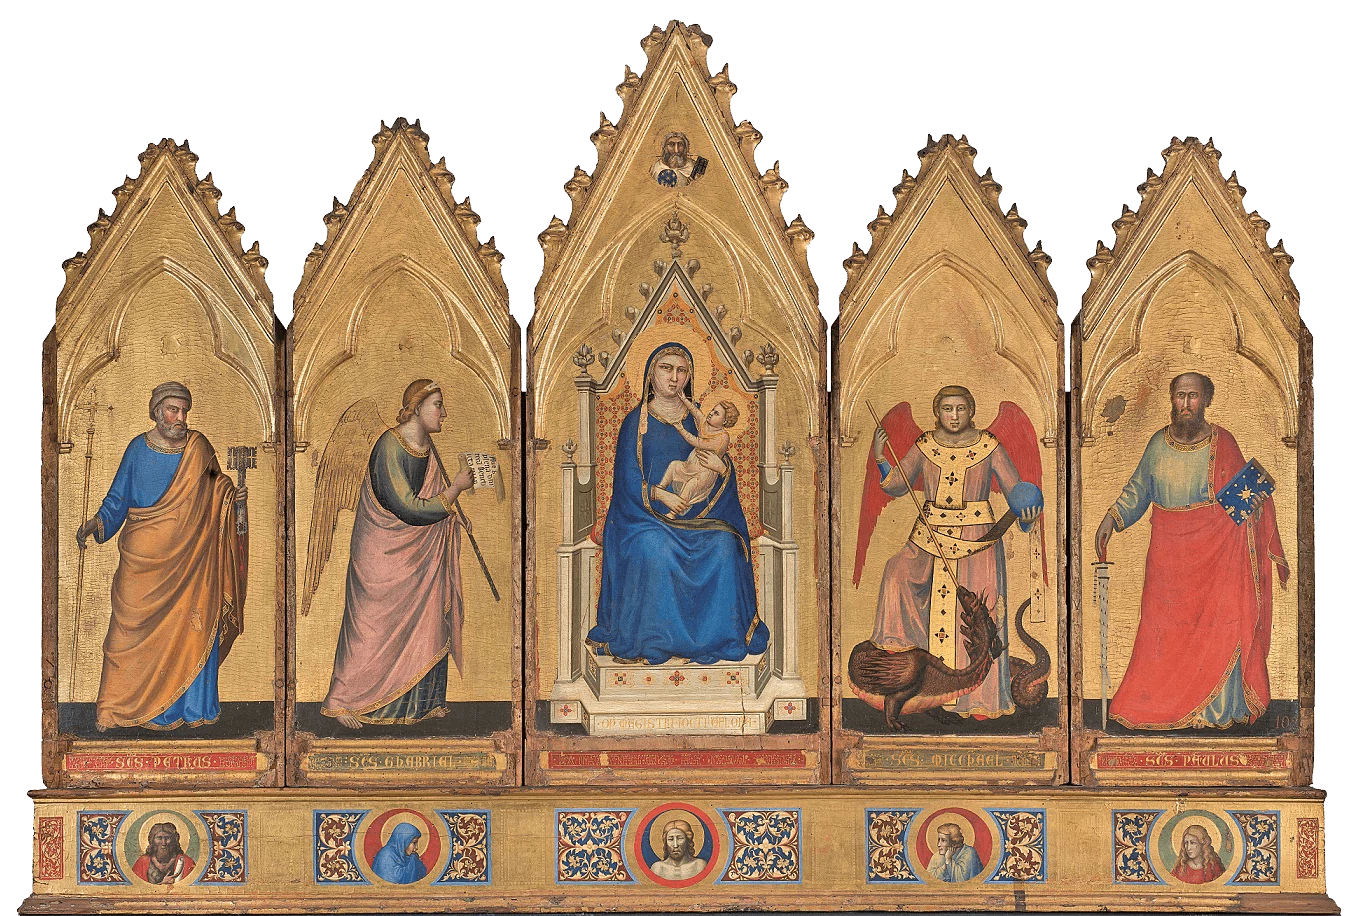 Polyptych of Bologna, Giotto di Bondone